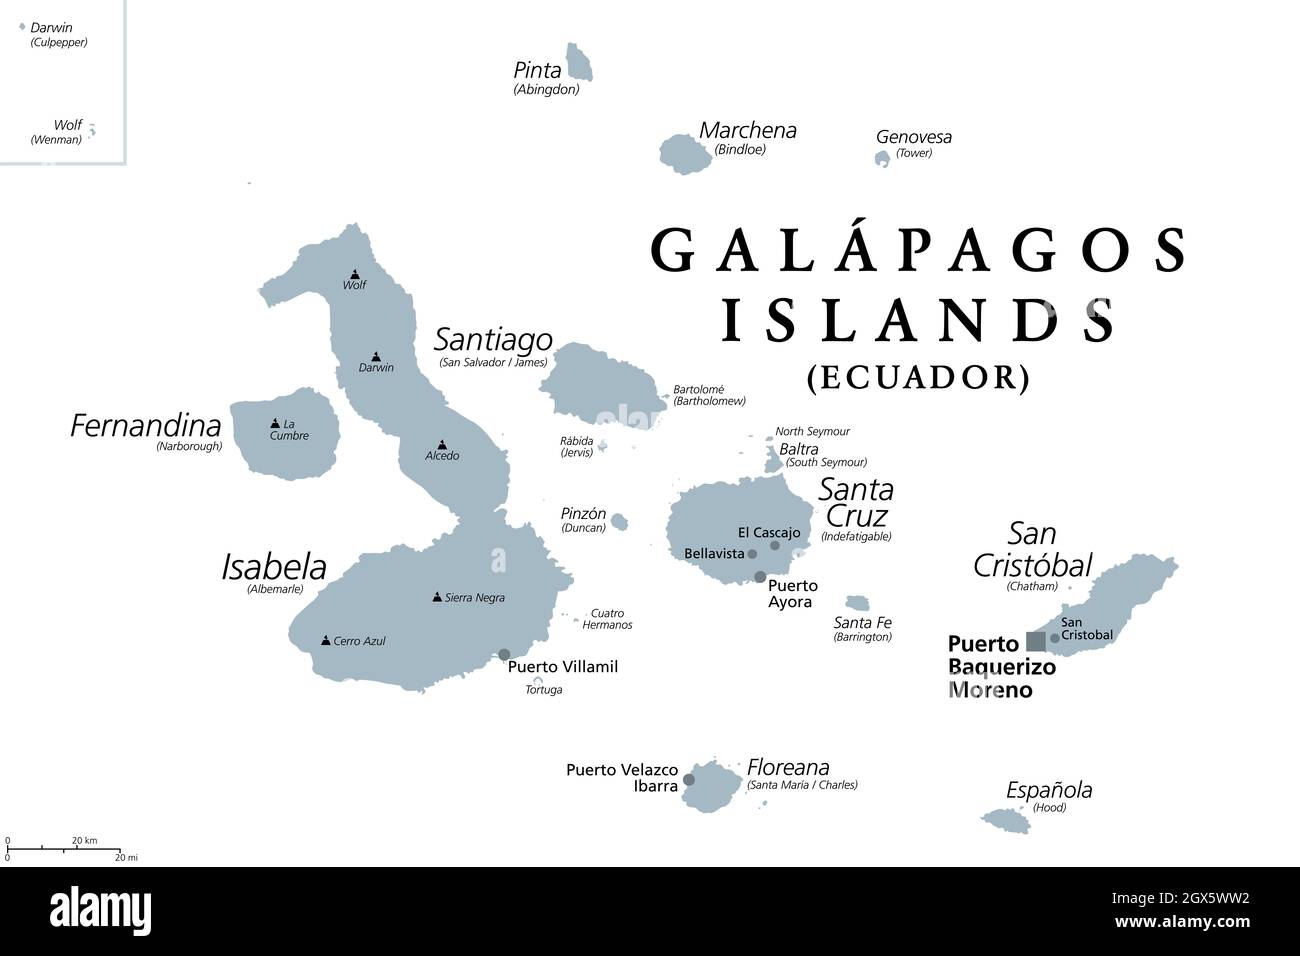 Isole Galapagos, Ecuador, mappa politica grigia, capitale Puerto Baquerizo Moreno. Arcipelago di isole vulcaniche su entrambi i lati dell'equatore nel Pacifico. Foto Stock